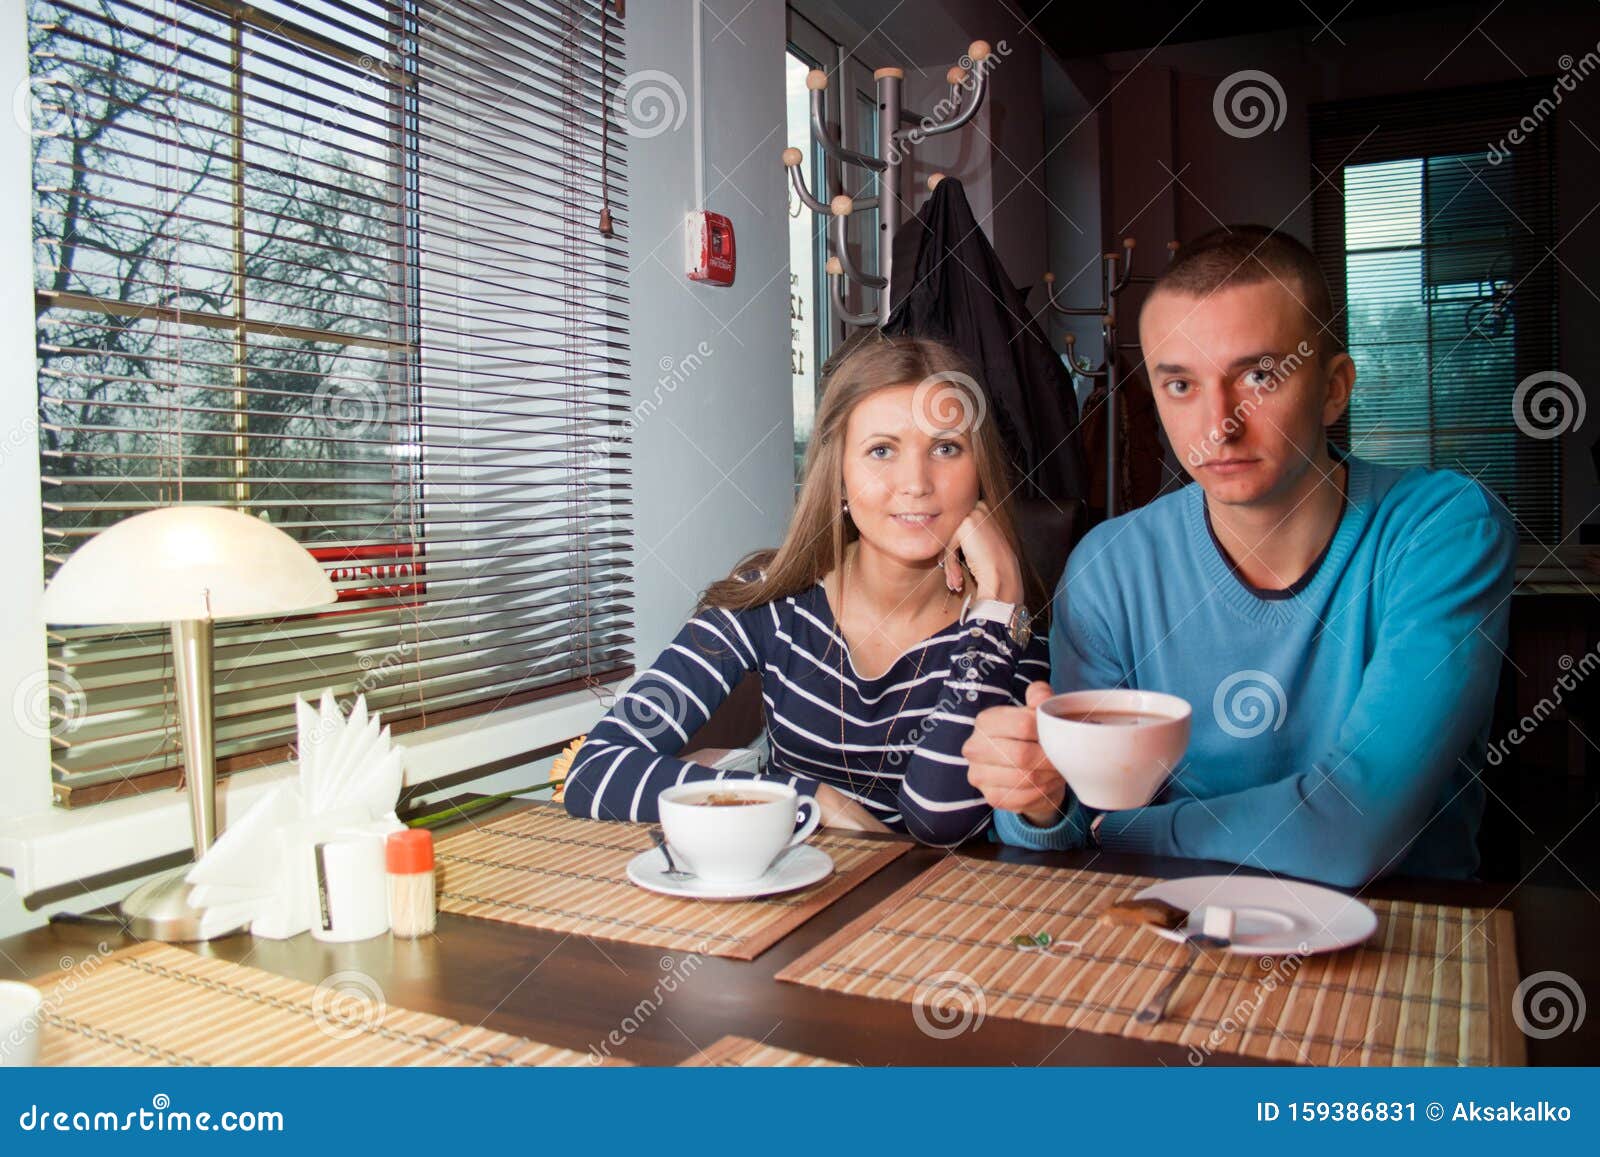 Ist dating cafe kostenlos